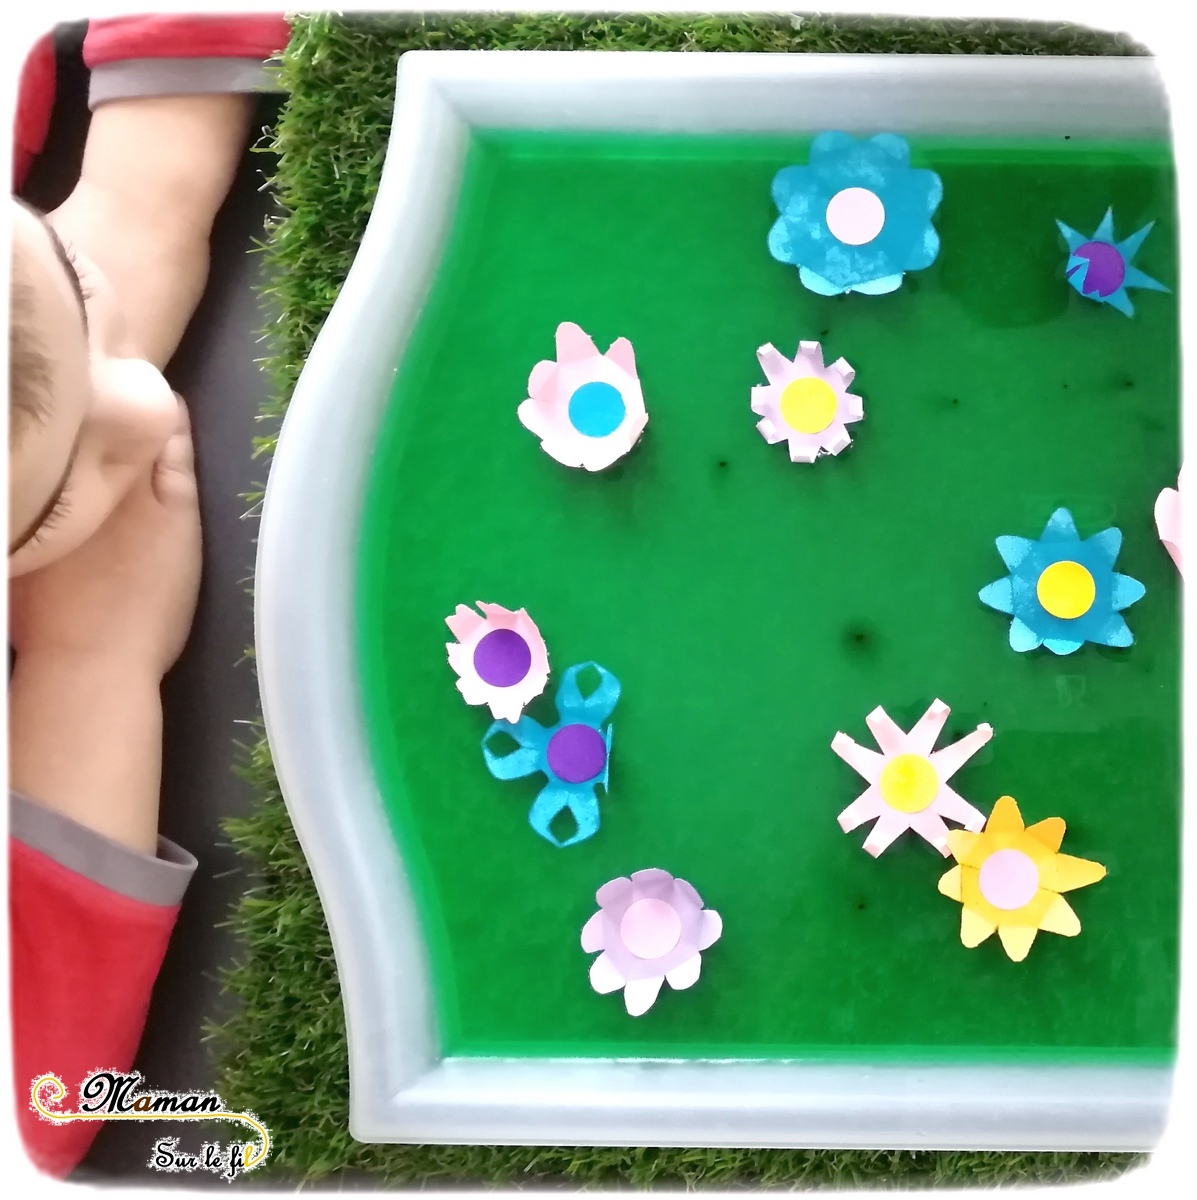 Activité enfants - Faire éclore un champs de fleurs - éclosion - papier - expérience - observation - printemps - rv sur le fil - mslf